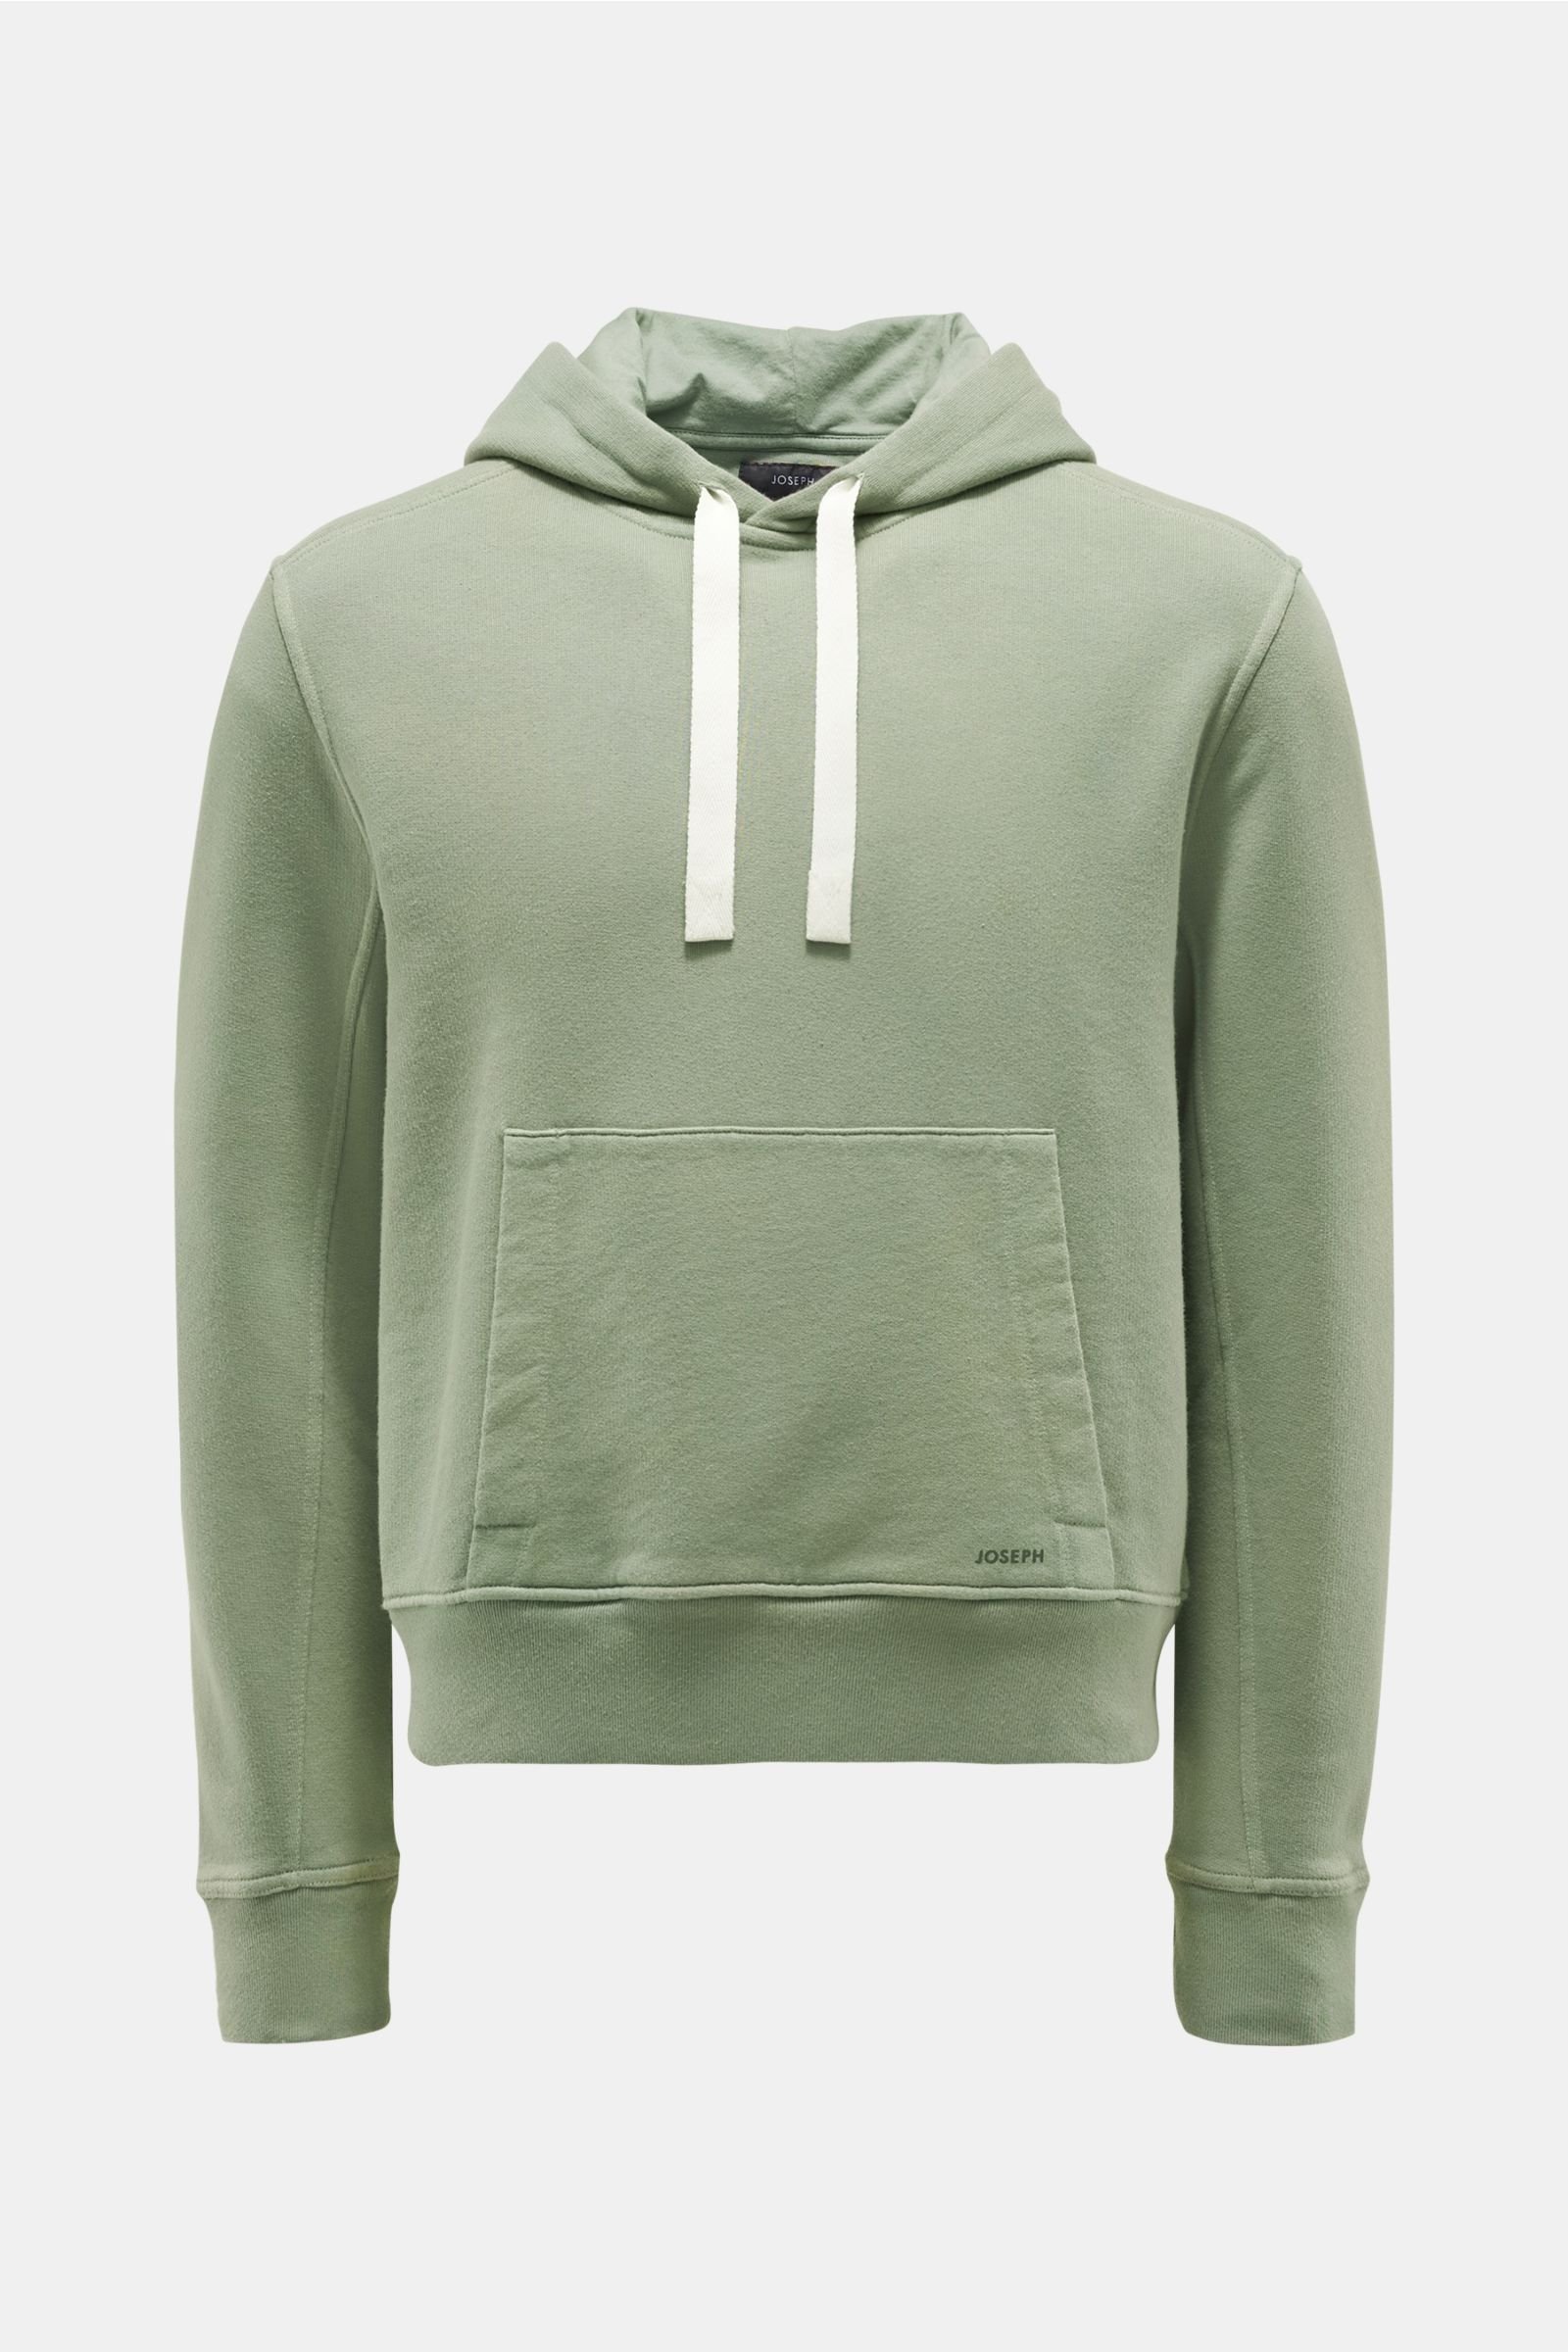 Hooded jumper grey-green